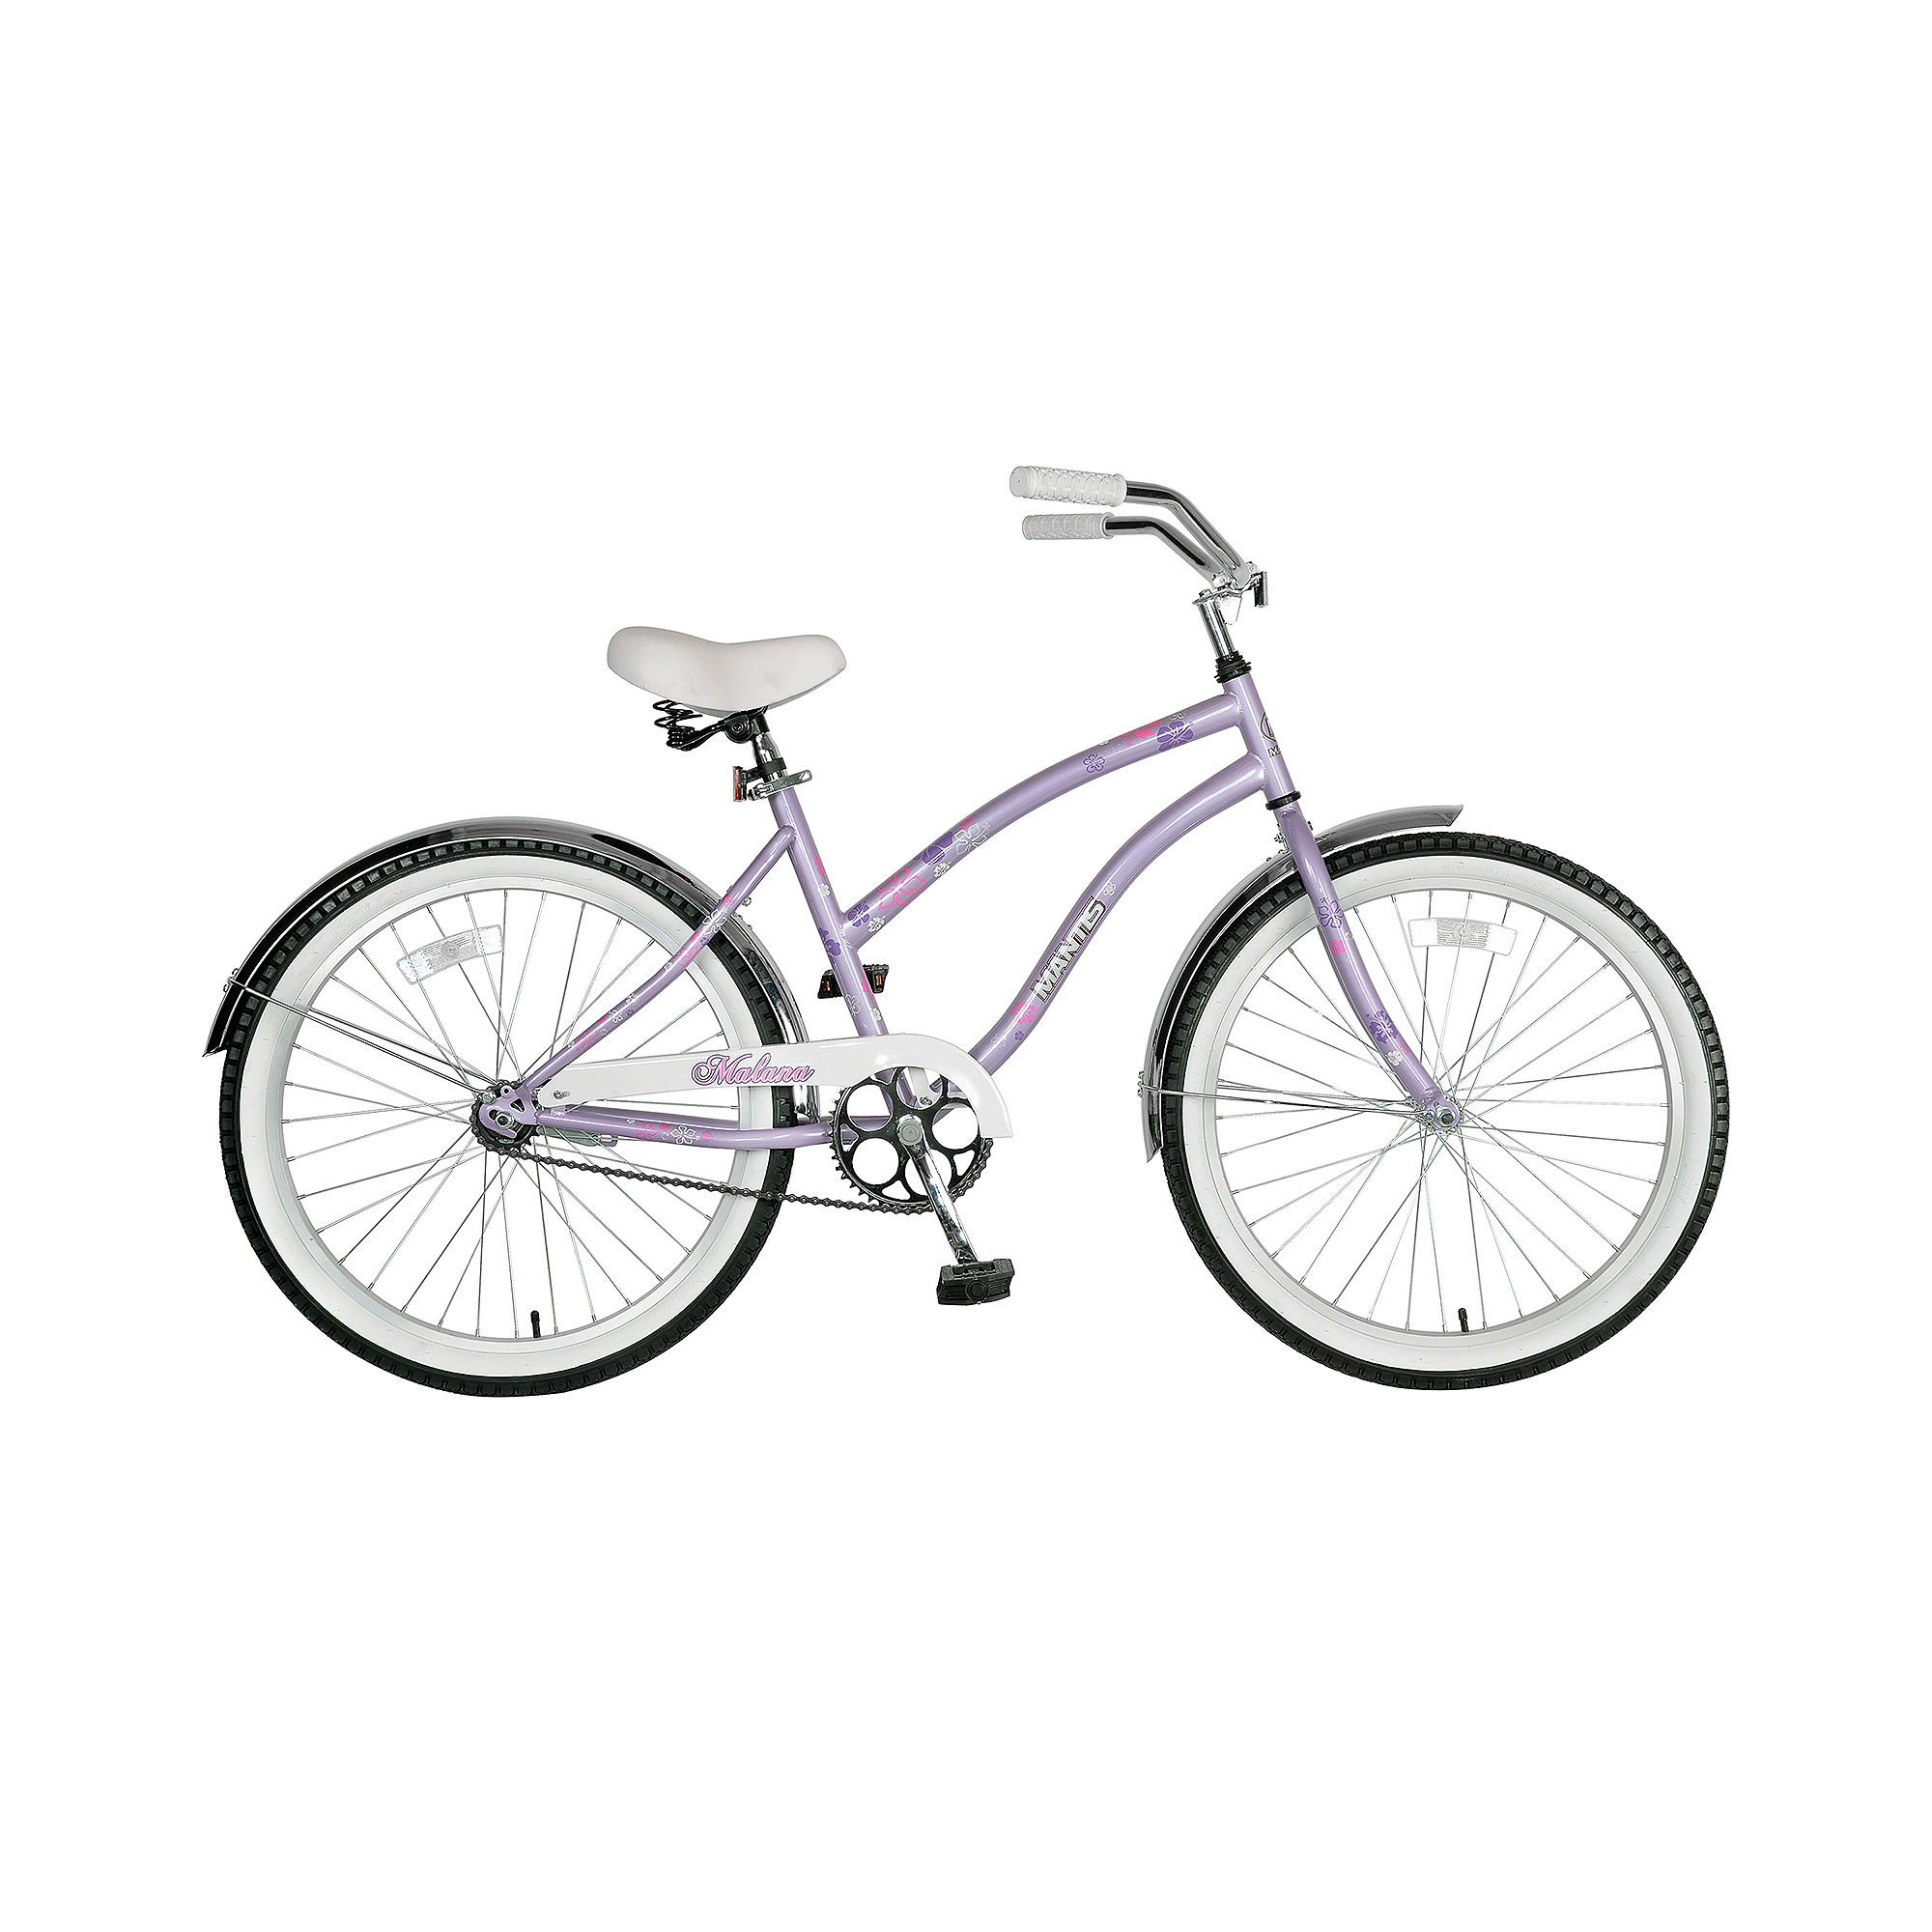 Mantis Malana Single-Speed Girls' Cruiser Bicycle